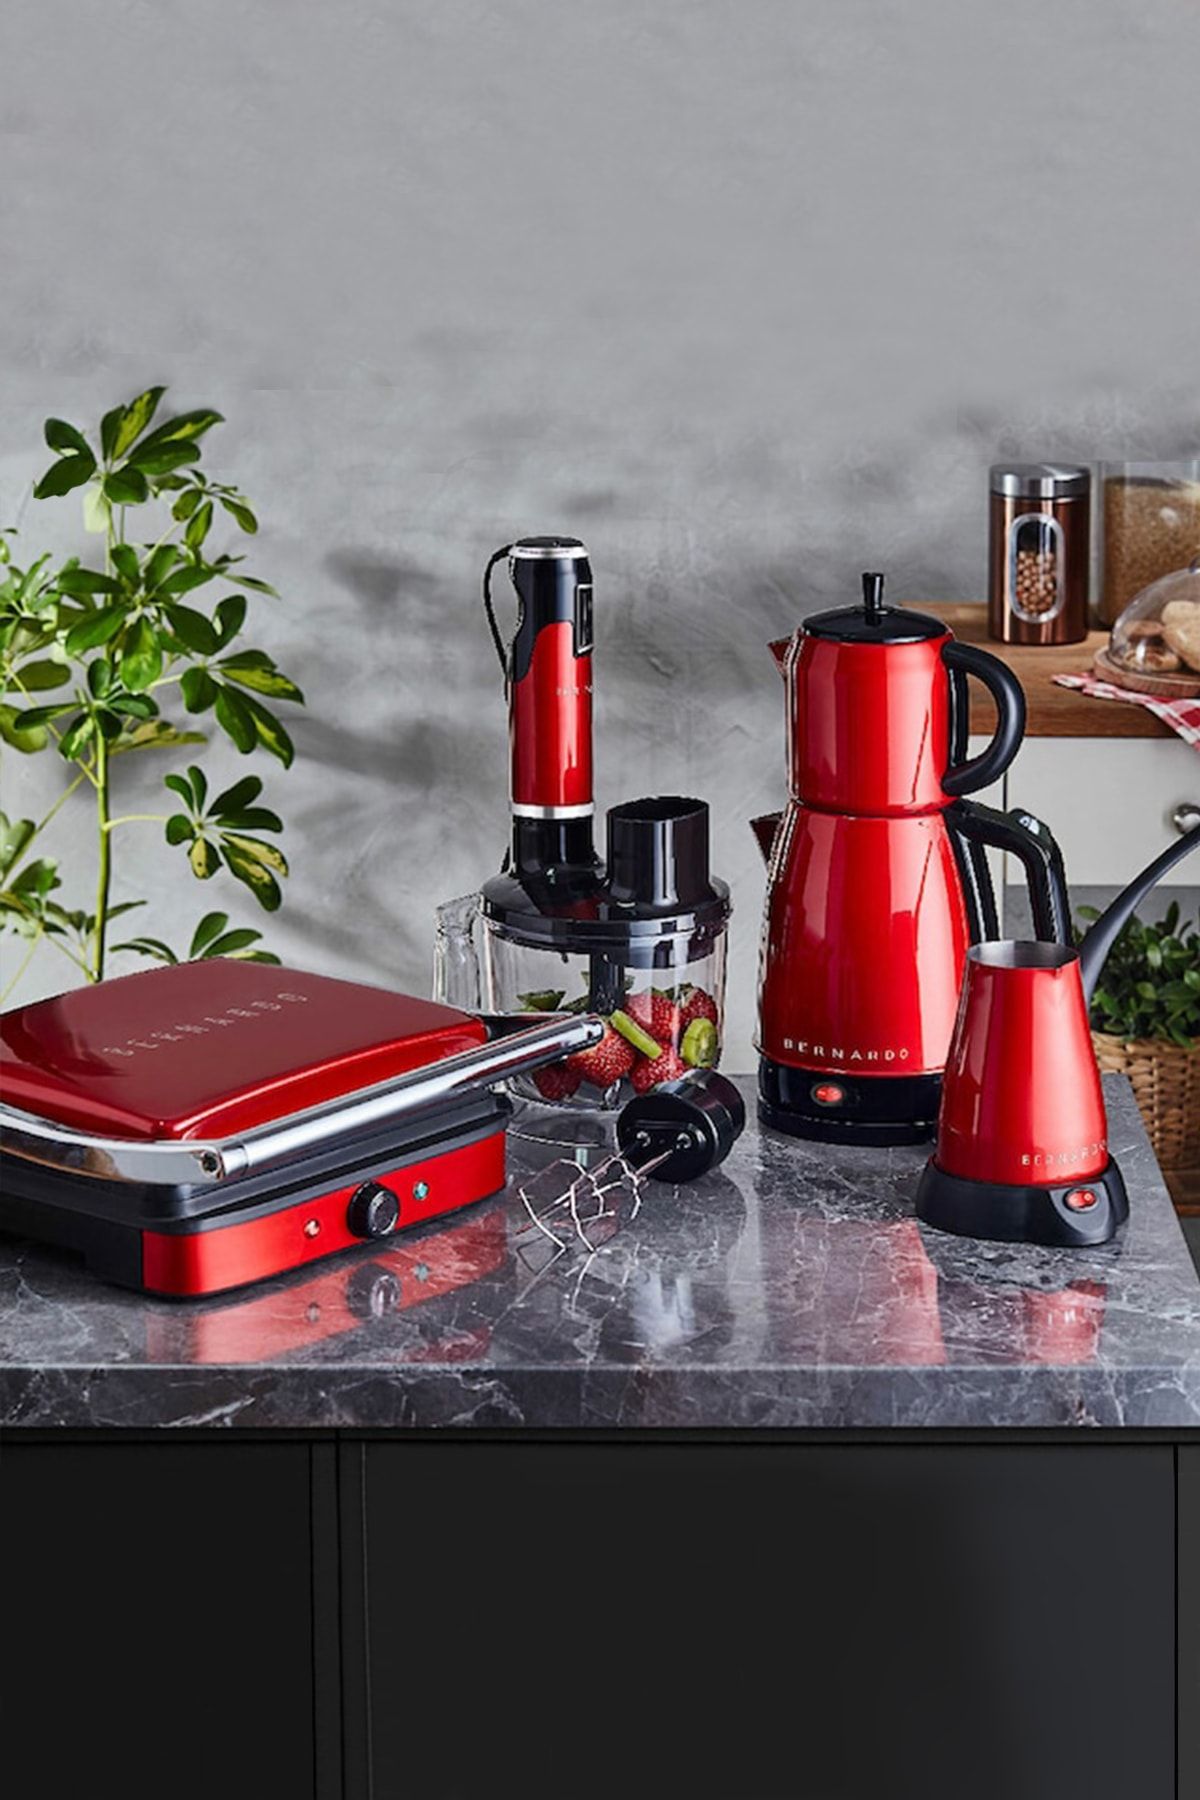 Bernardo Sapphire Ruby 4lü Mega Elektro Mutfak Çeyiz Seti Kırmızı